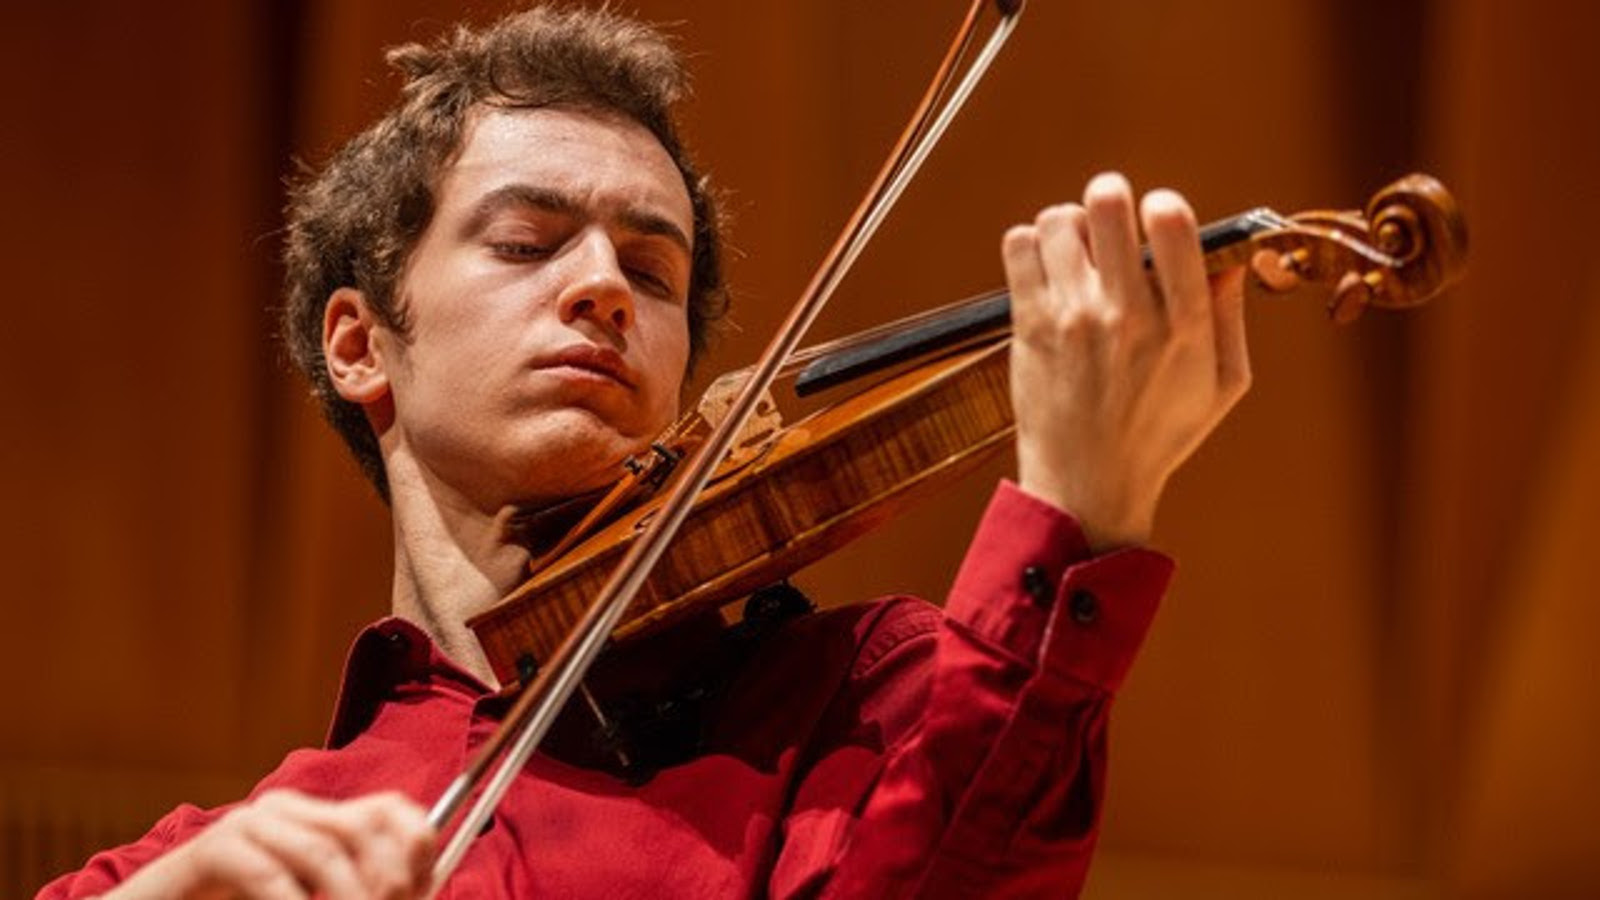 Kuvassa on Adrian Ibañez-Resja soittamassa viulua ja hänellä on punainen paita päällään.  Kuva on puolivartalokuva. Tausta on ruskea.